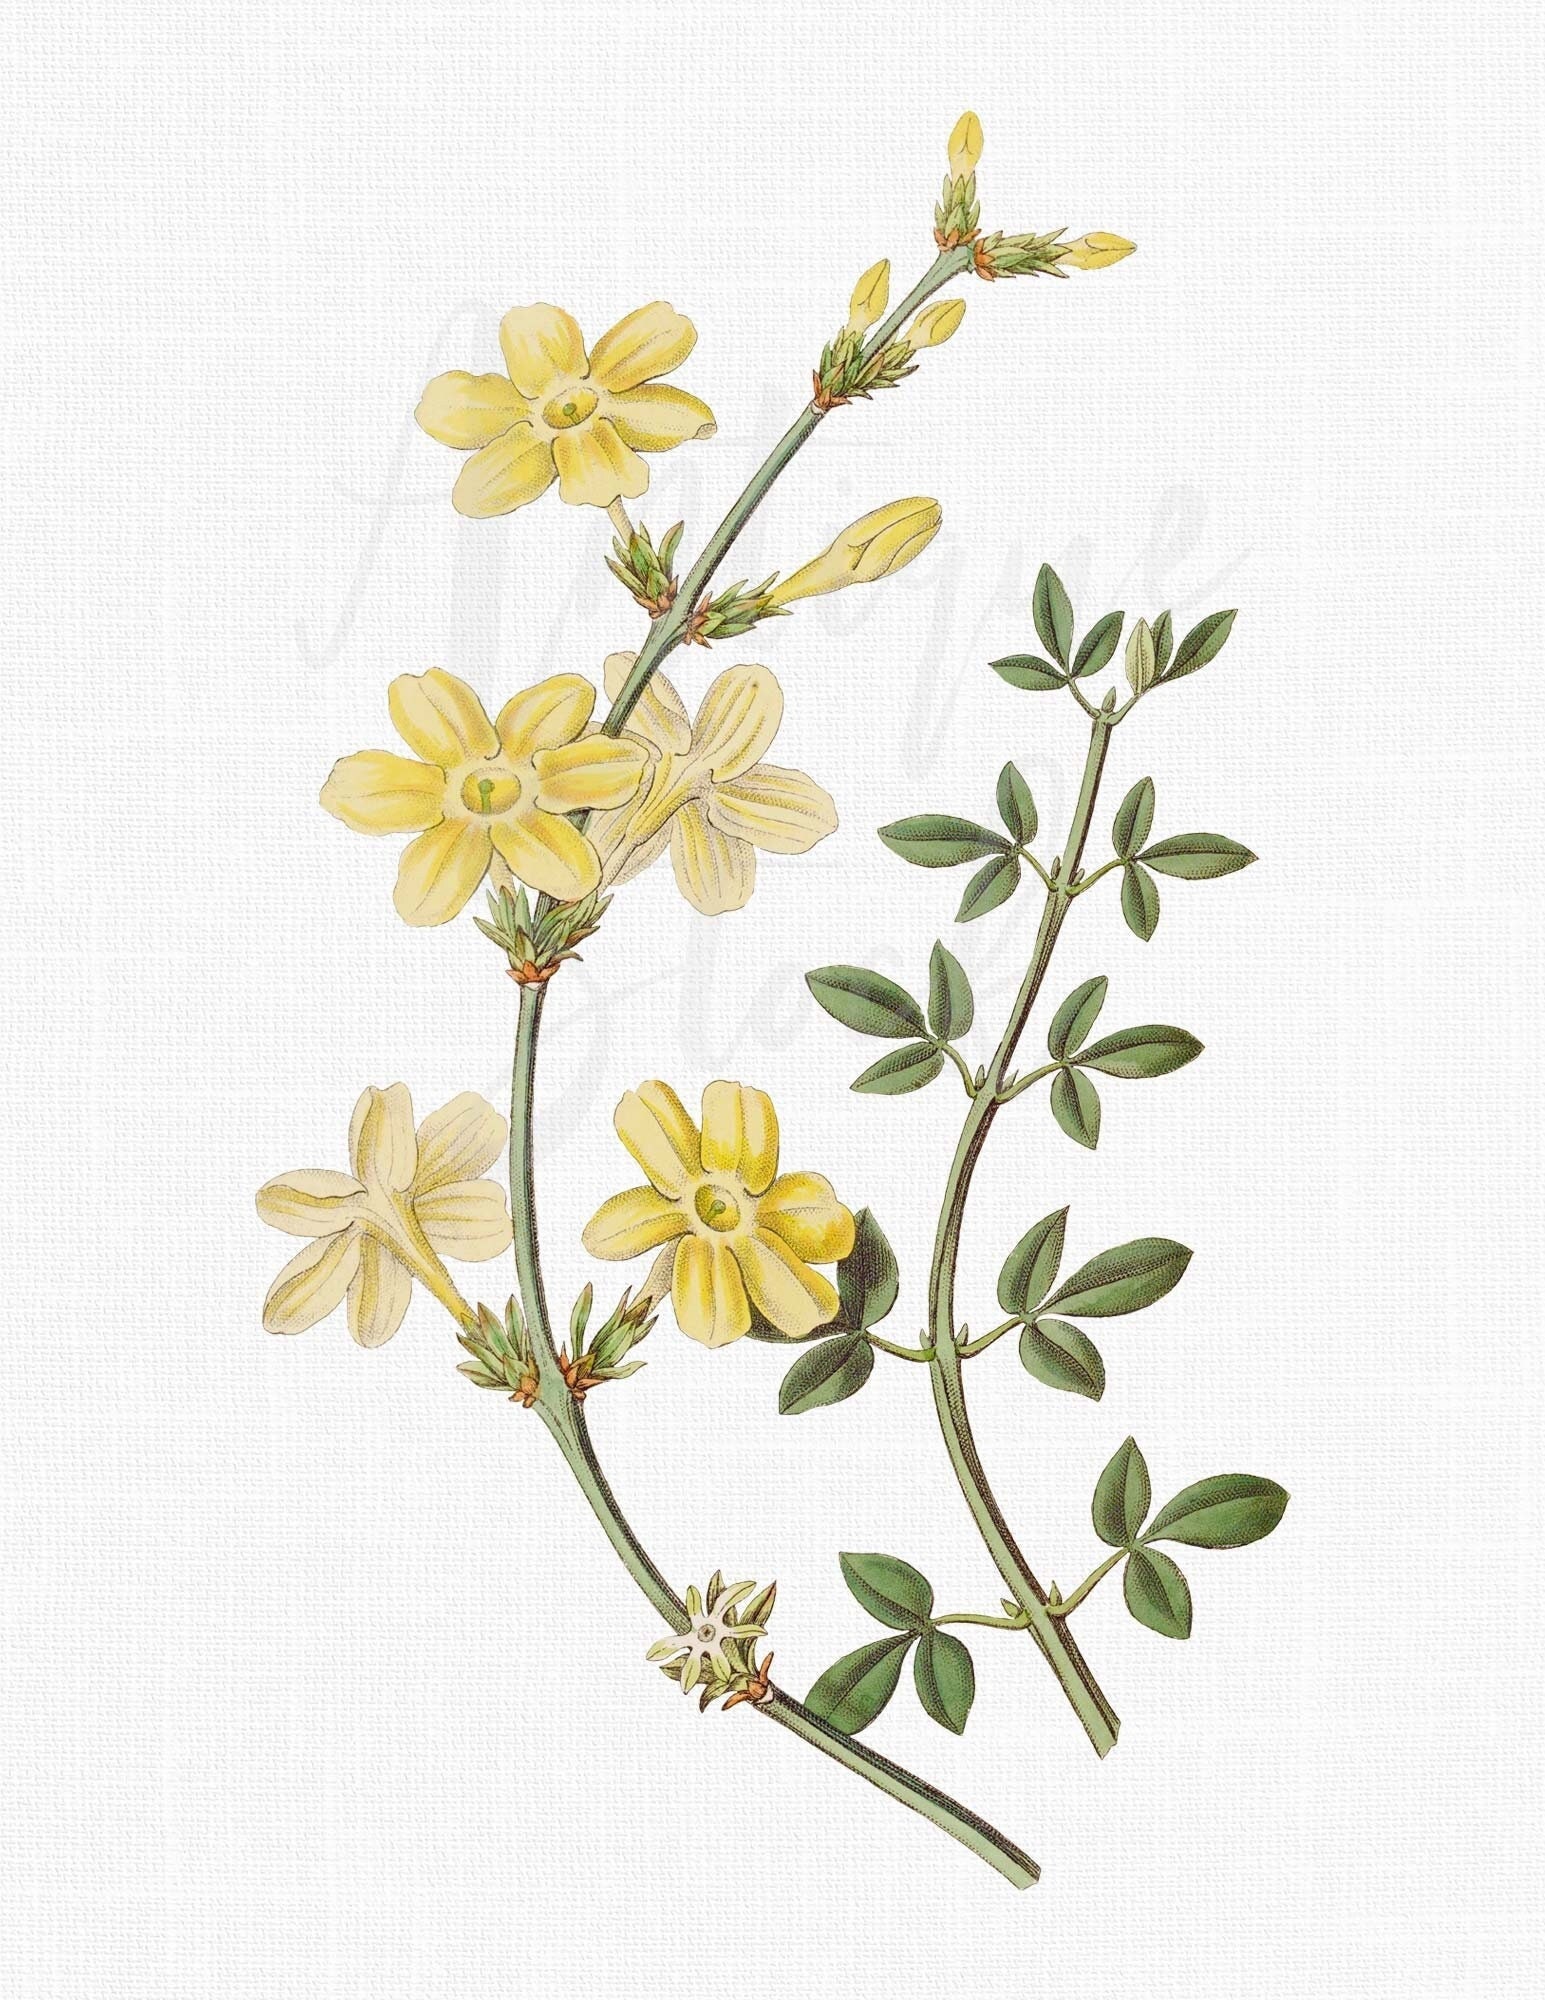 Vial of Dried Jasmine Flowers 2 Grams 